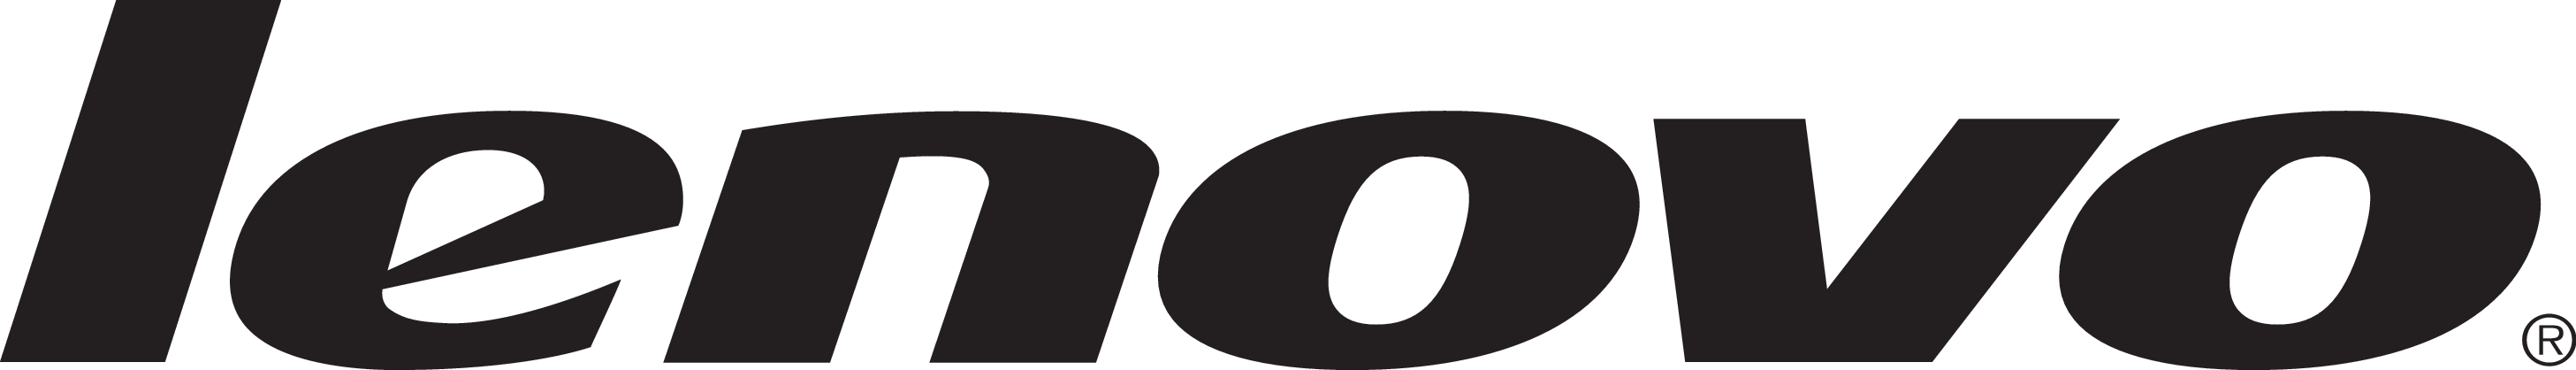  Lenovo  logo  7 SynergyTek Consulting